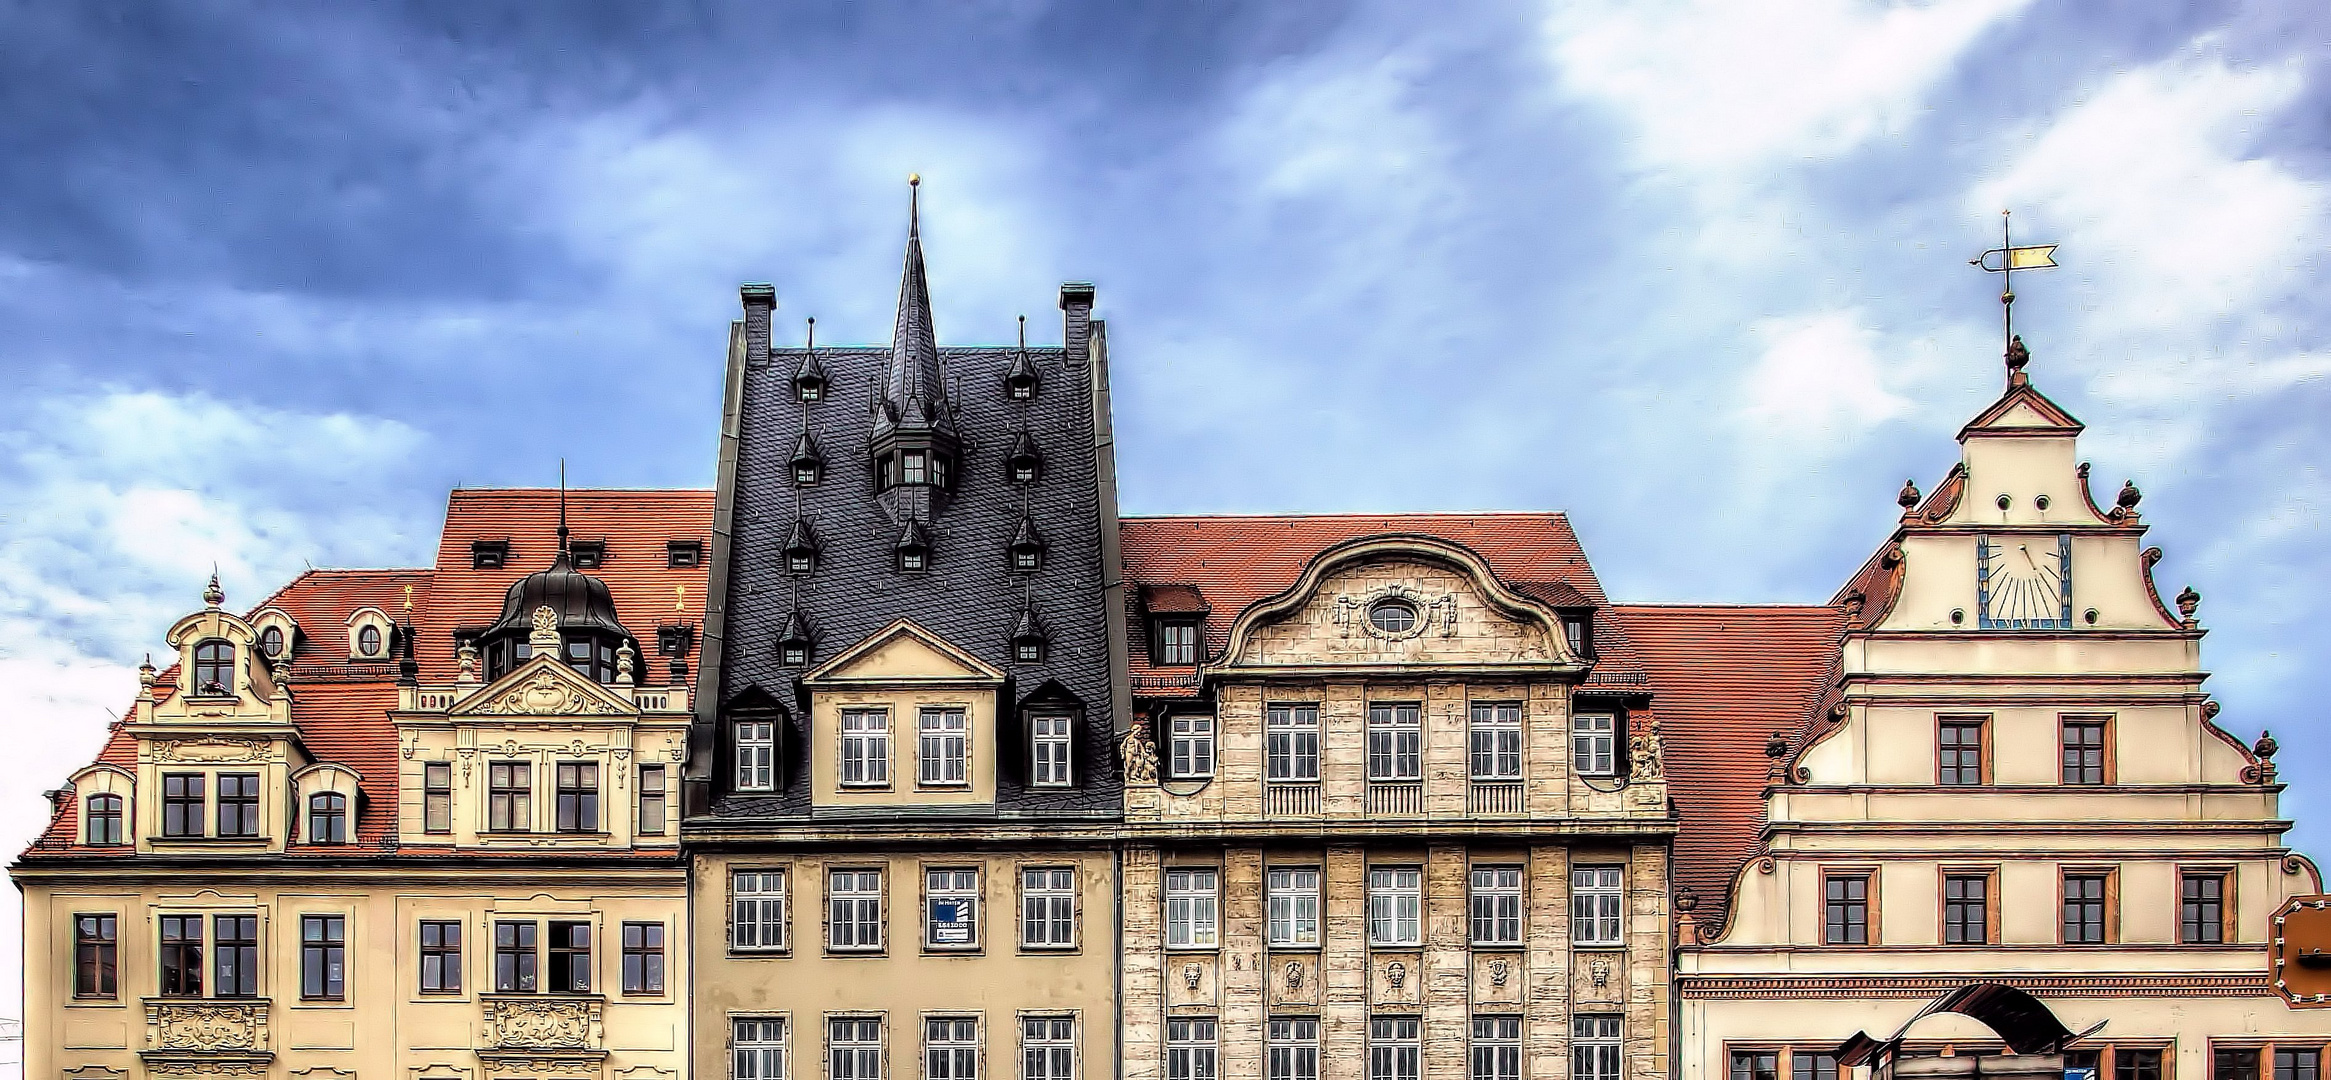 schmucke Fassaden am Leipziger Markt mit der Giebelfront alte Waage